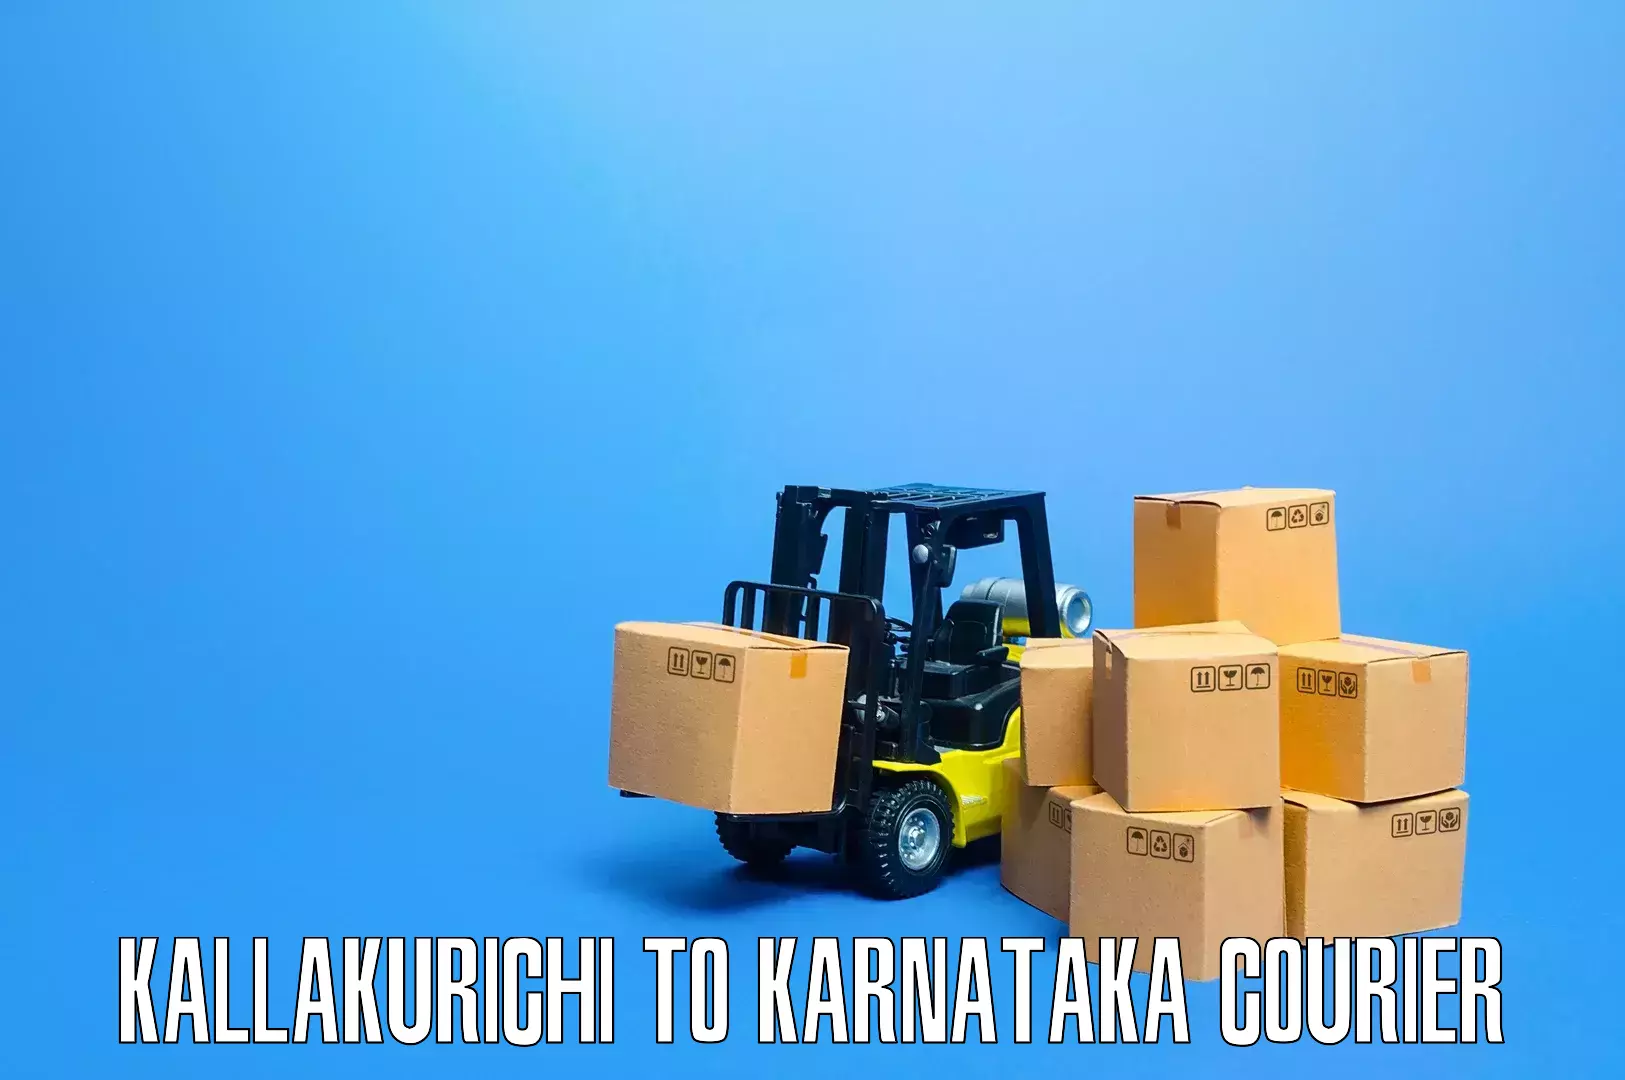 Personalized furniture moving Kallakurichi to Dakshina Kannada